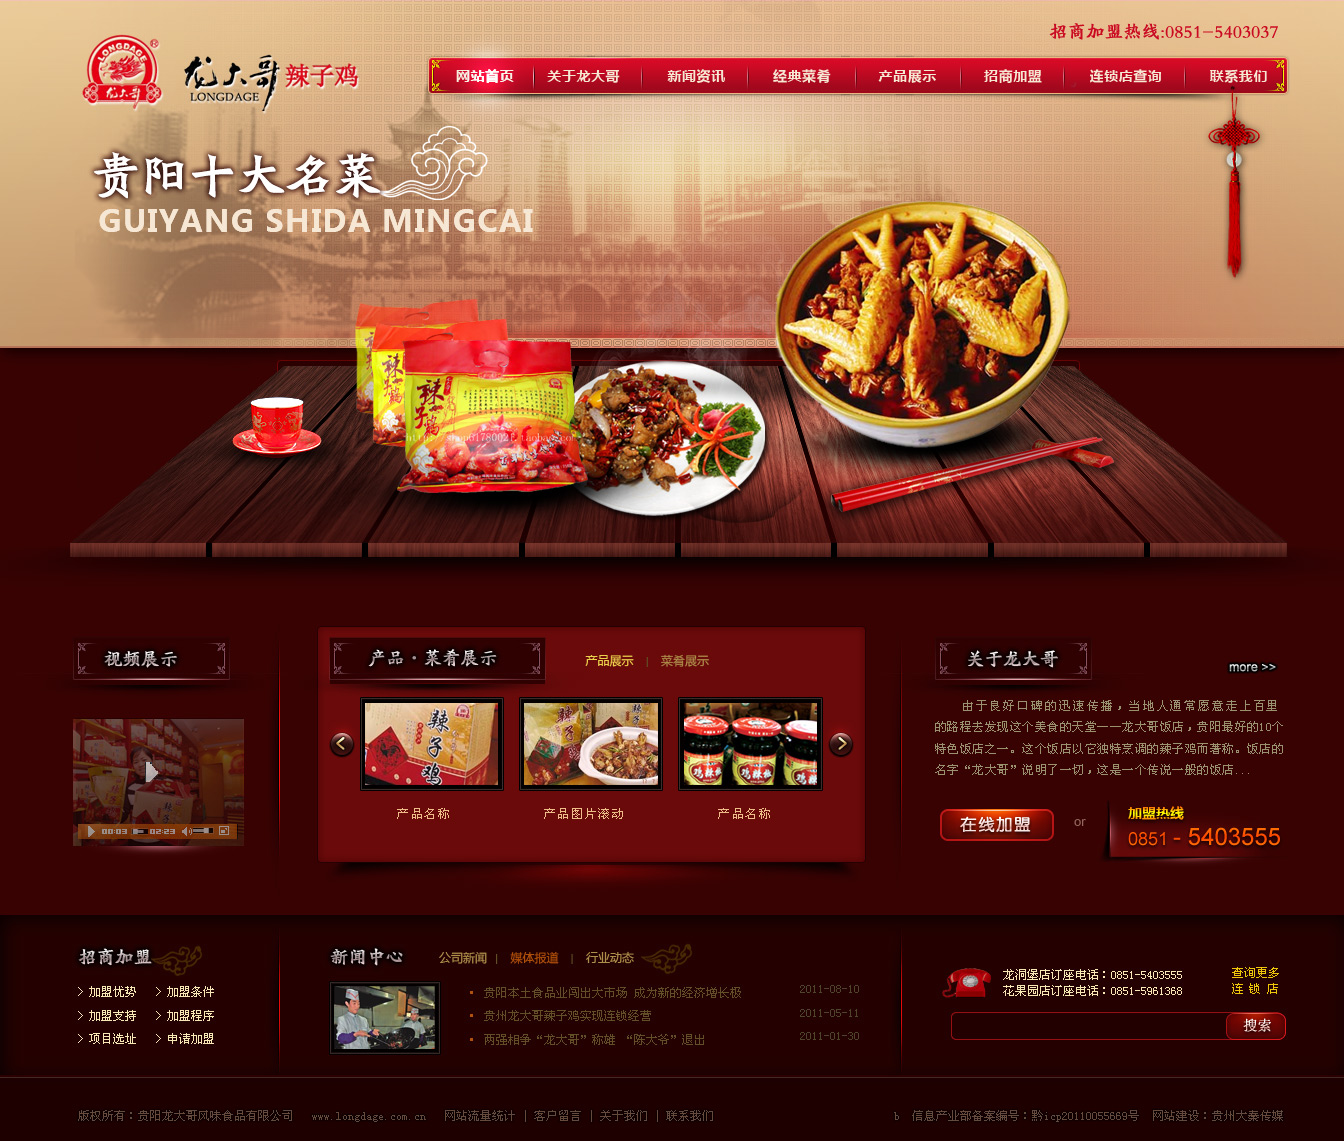 贵州贵阳“龙大哥”辣子鸡品牌官网设计开发